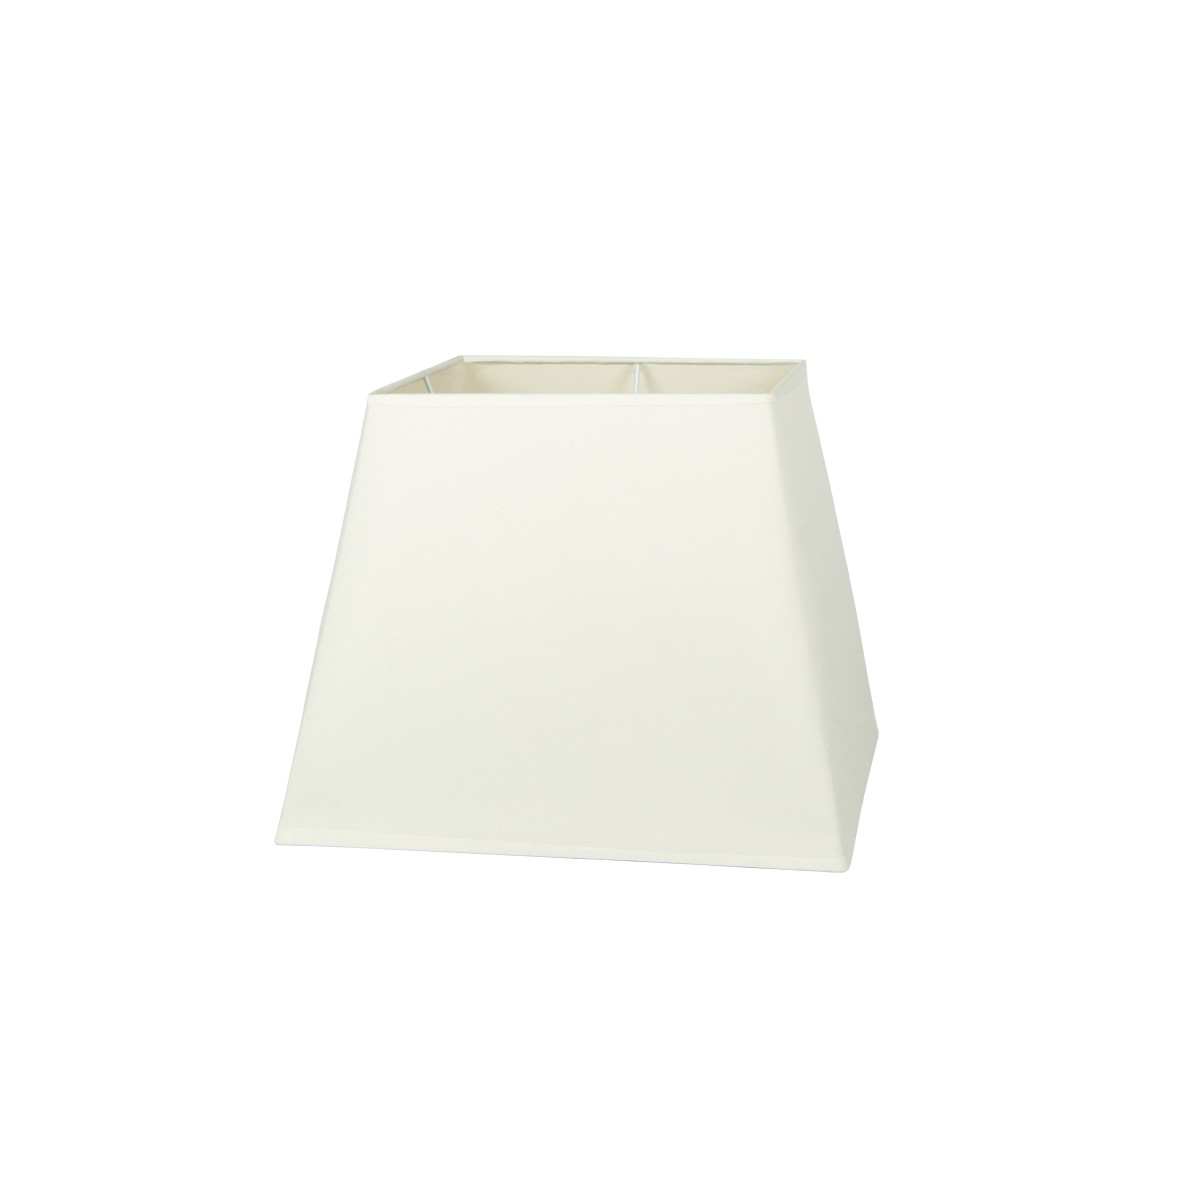 Καπέλο μονόχρωμο τραπέζιο 1 cotton 31cm κάτω πλευρά λευκό VK/E27/E14/SM31/W